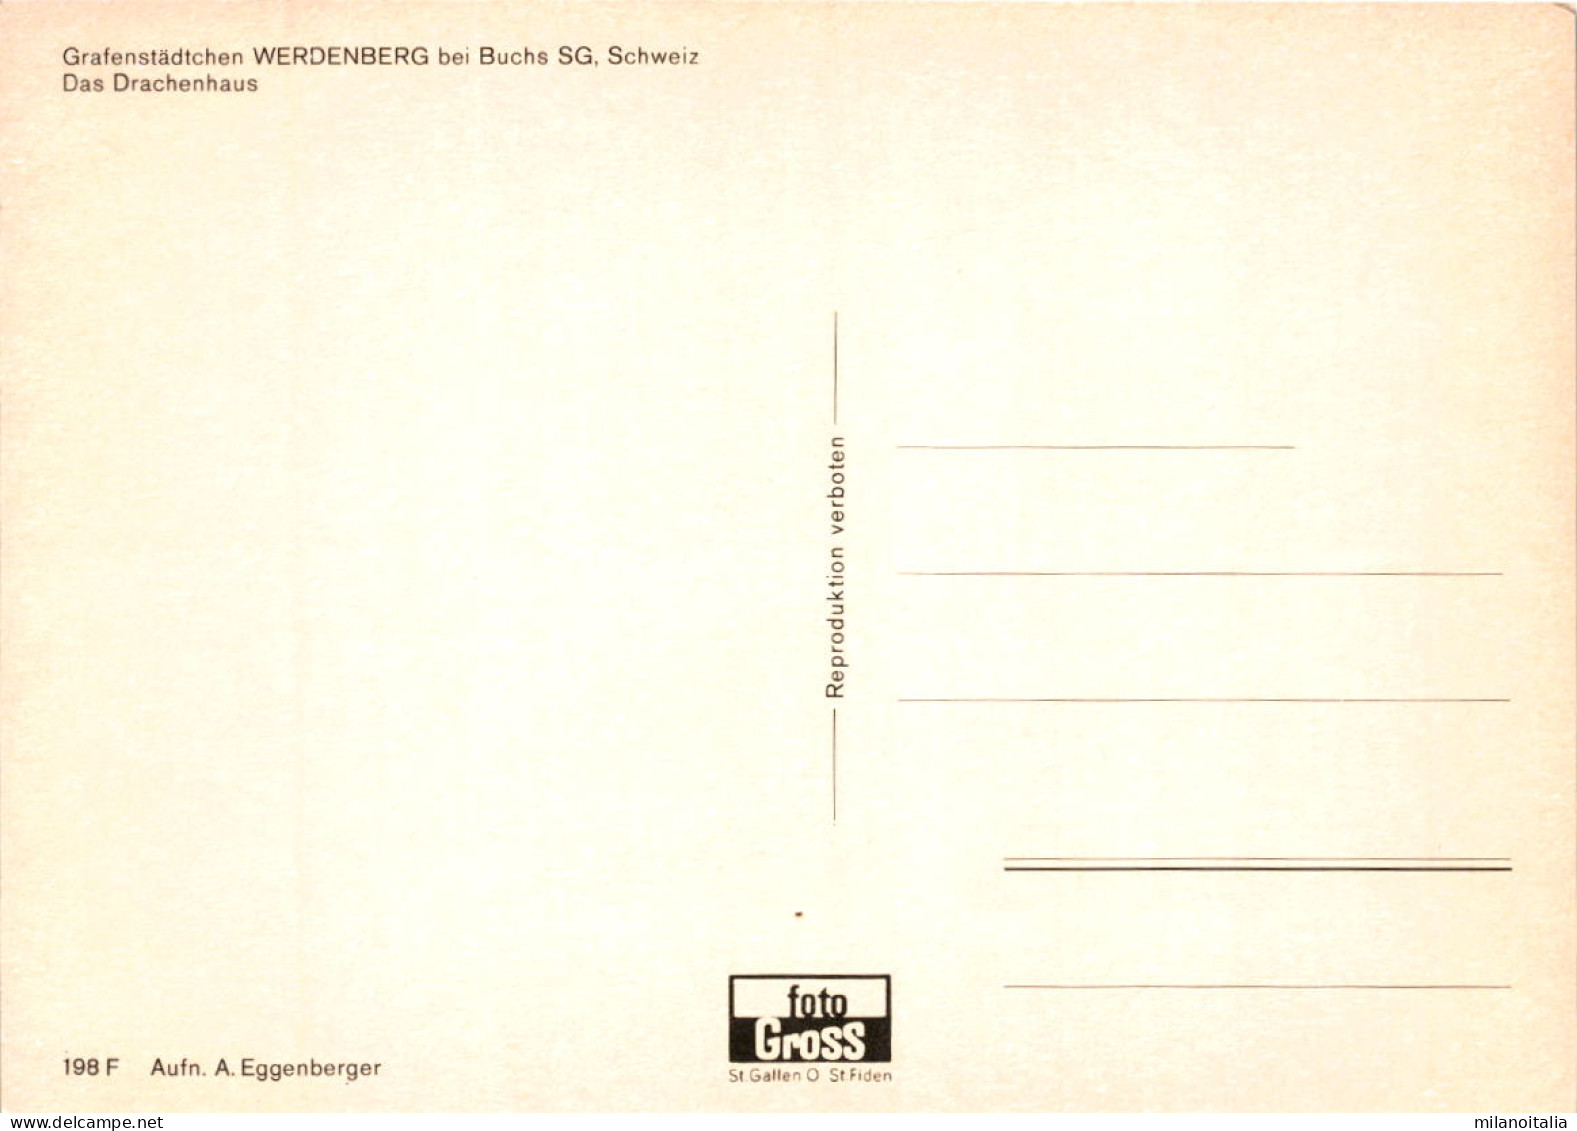 Grafenstädtchen Werdenberg Bei Buchs - Das Drachenhaus (198) - Buchs